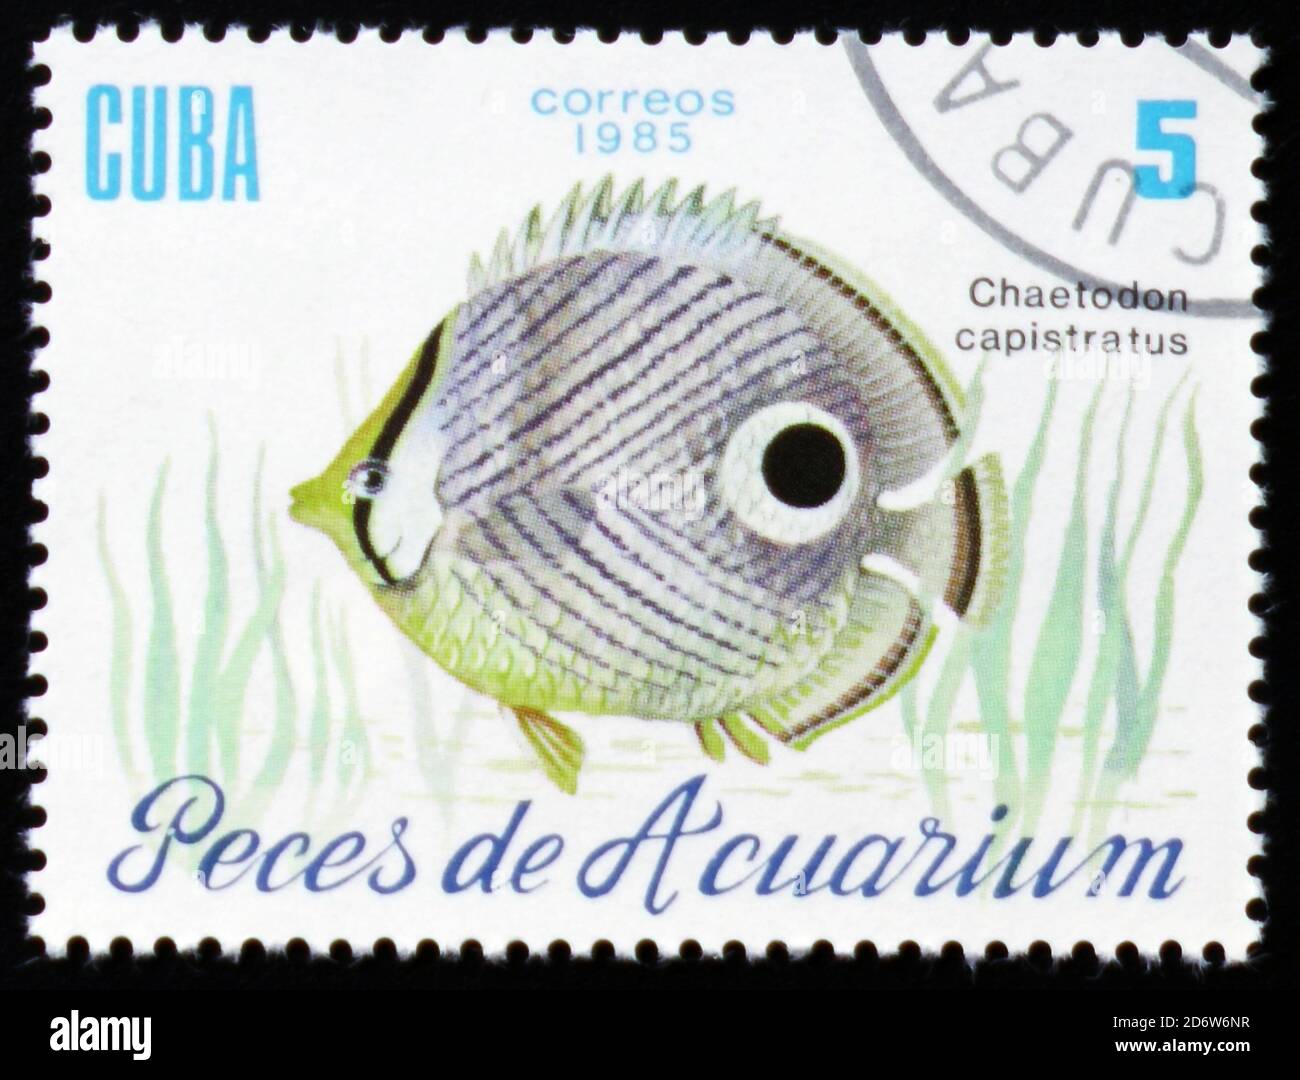 MOSKAU, RUSSLAND - 12. FEBRUAR 2017: Eine in Kuba gedruckte Marke zeigt einen Fisch mit der Aufschrift "Chaetodon capistratus", die Serie "Aquarium Fische", c Stockfoto